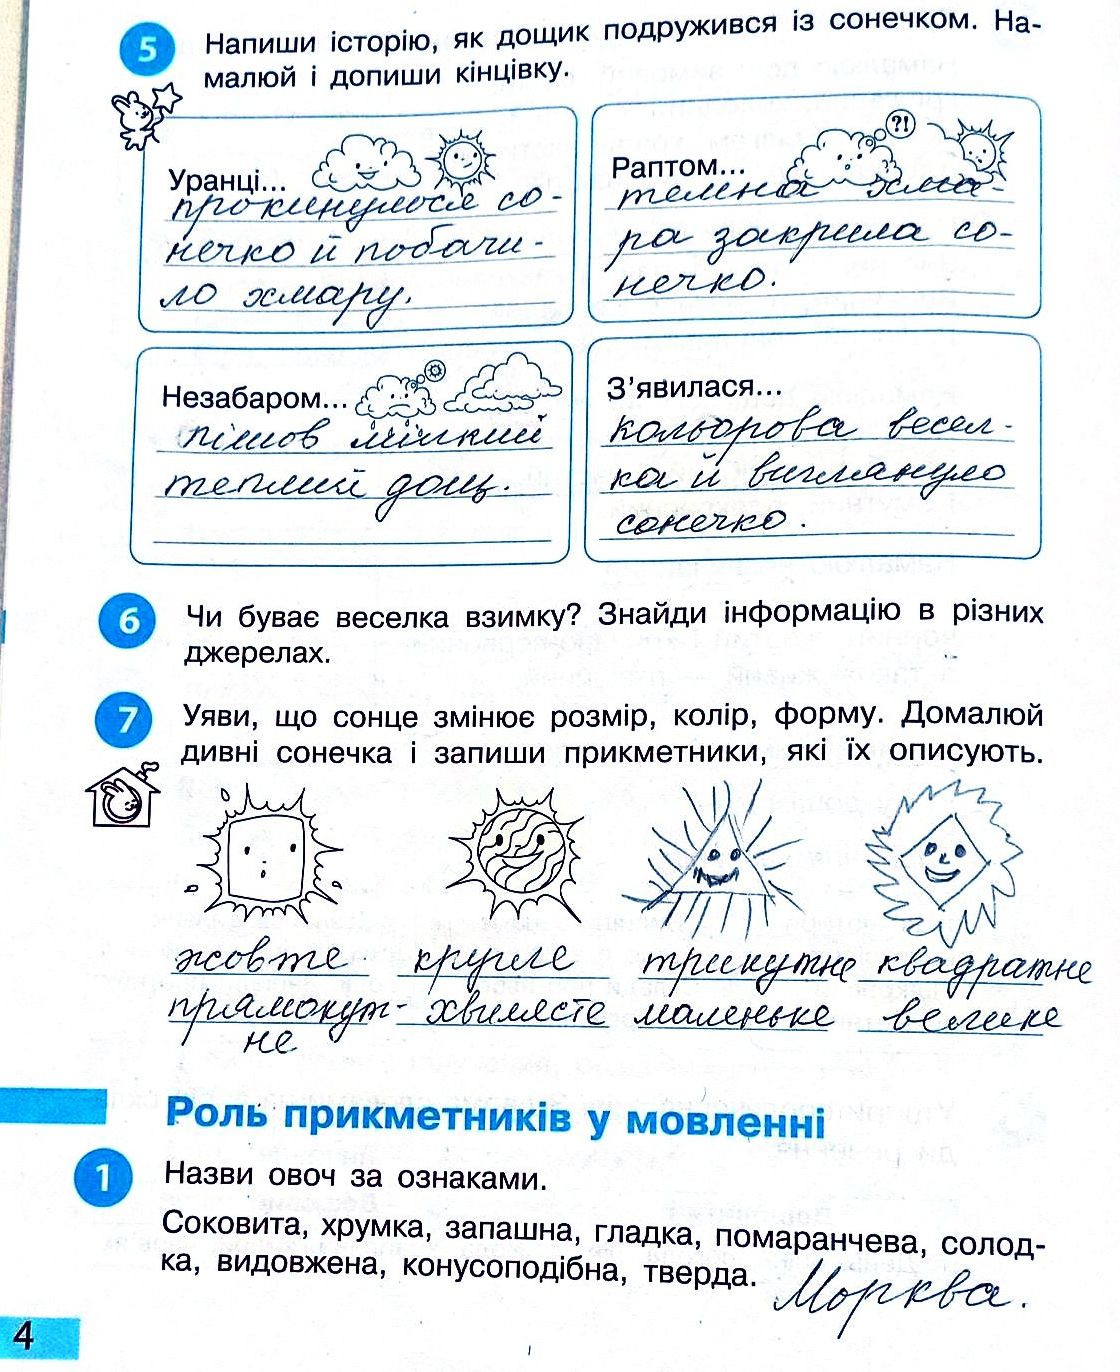 Сторінка 4 частина 2 гдз 3 клас робочий зошит українська мова Большакова